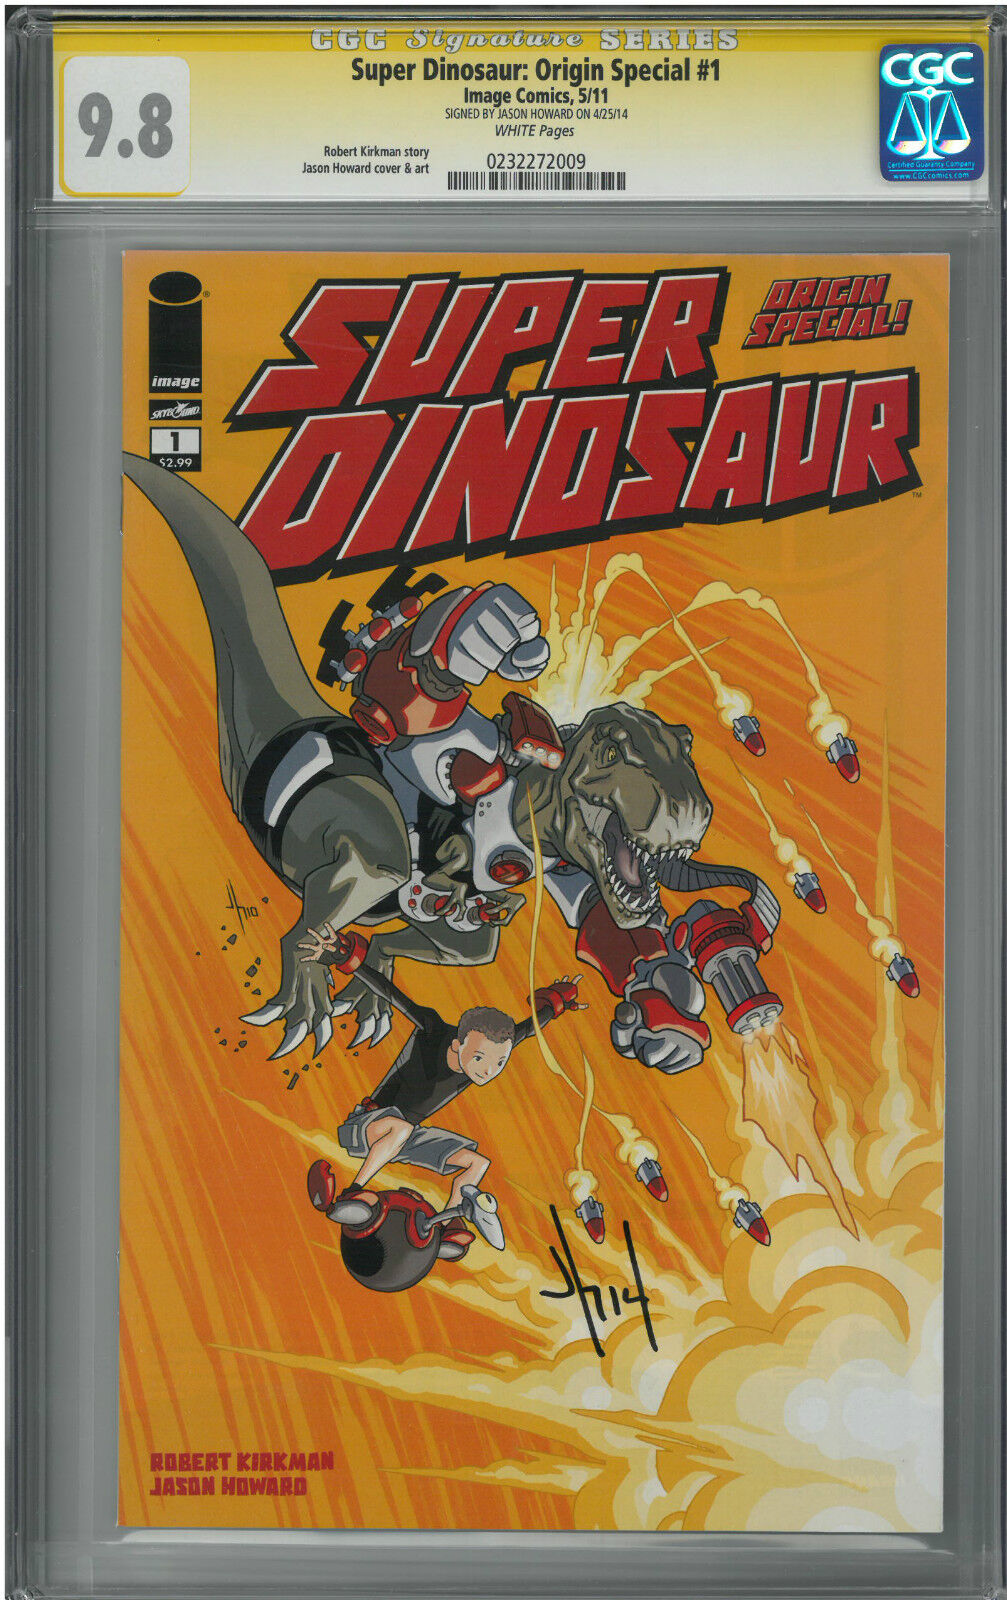 Super Dinosaur: Origin Special #1 (NM/MT) CGC 9.8 signed Jason Howard TOP CENSUS